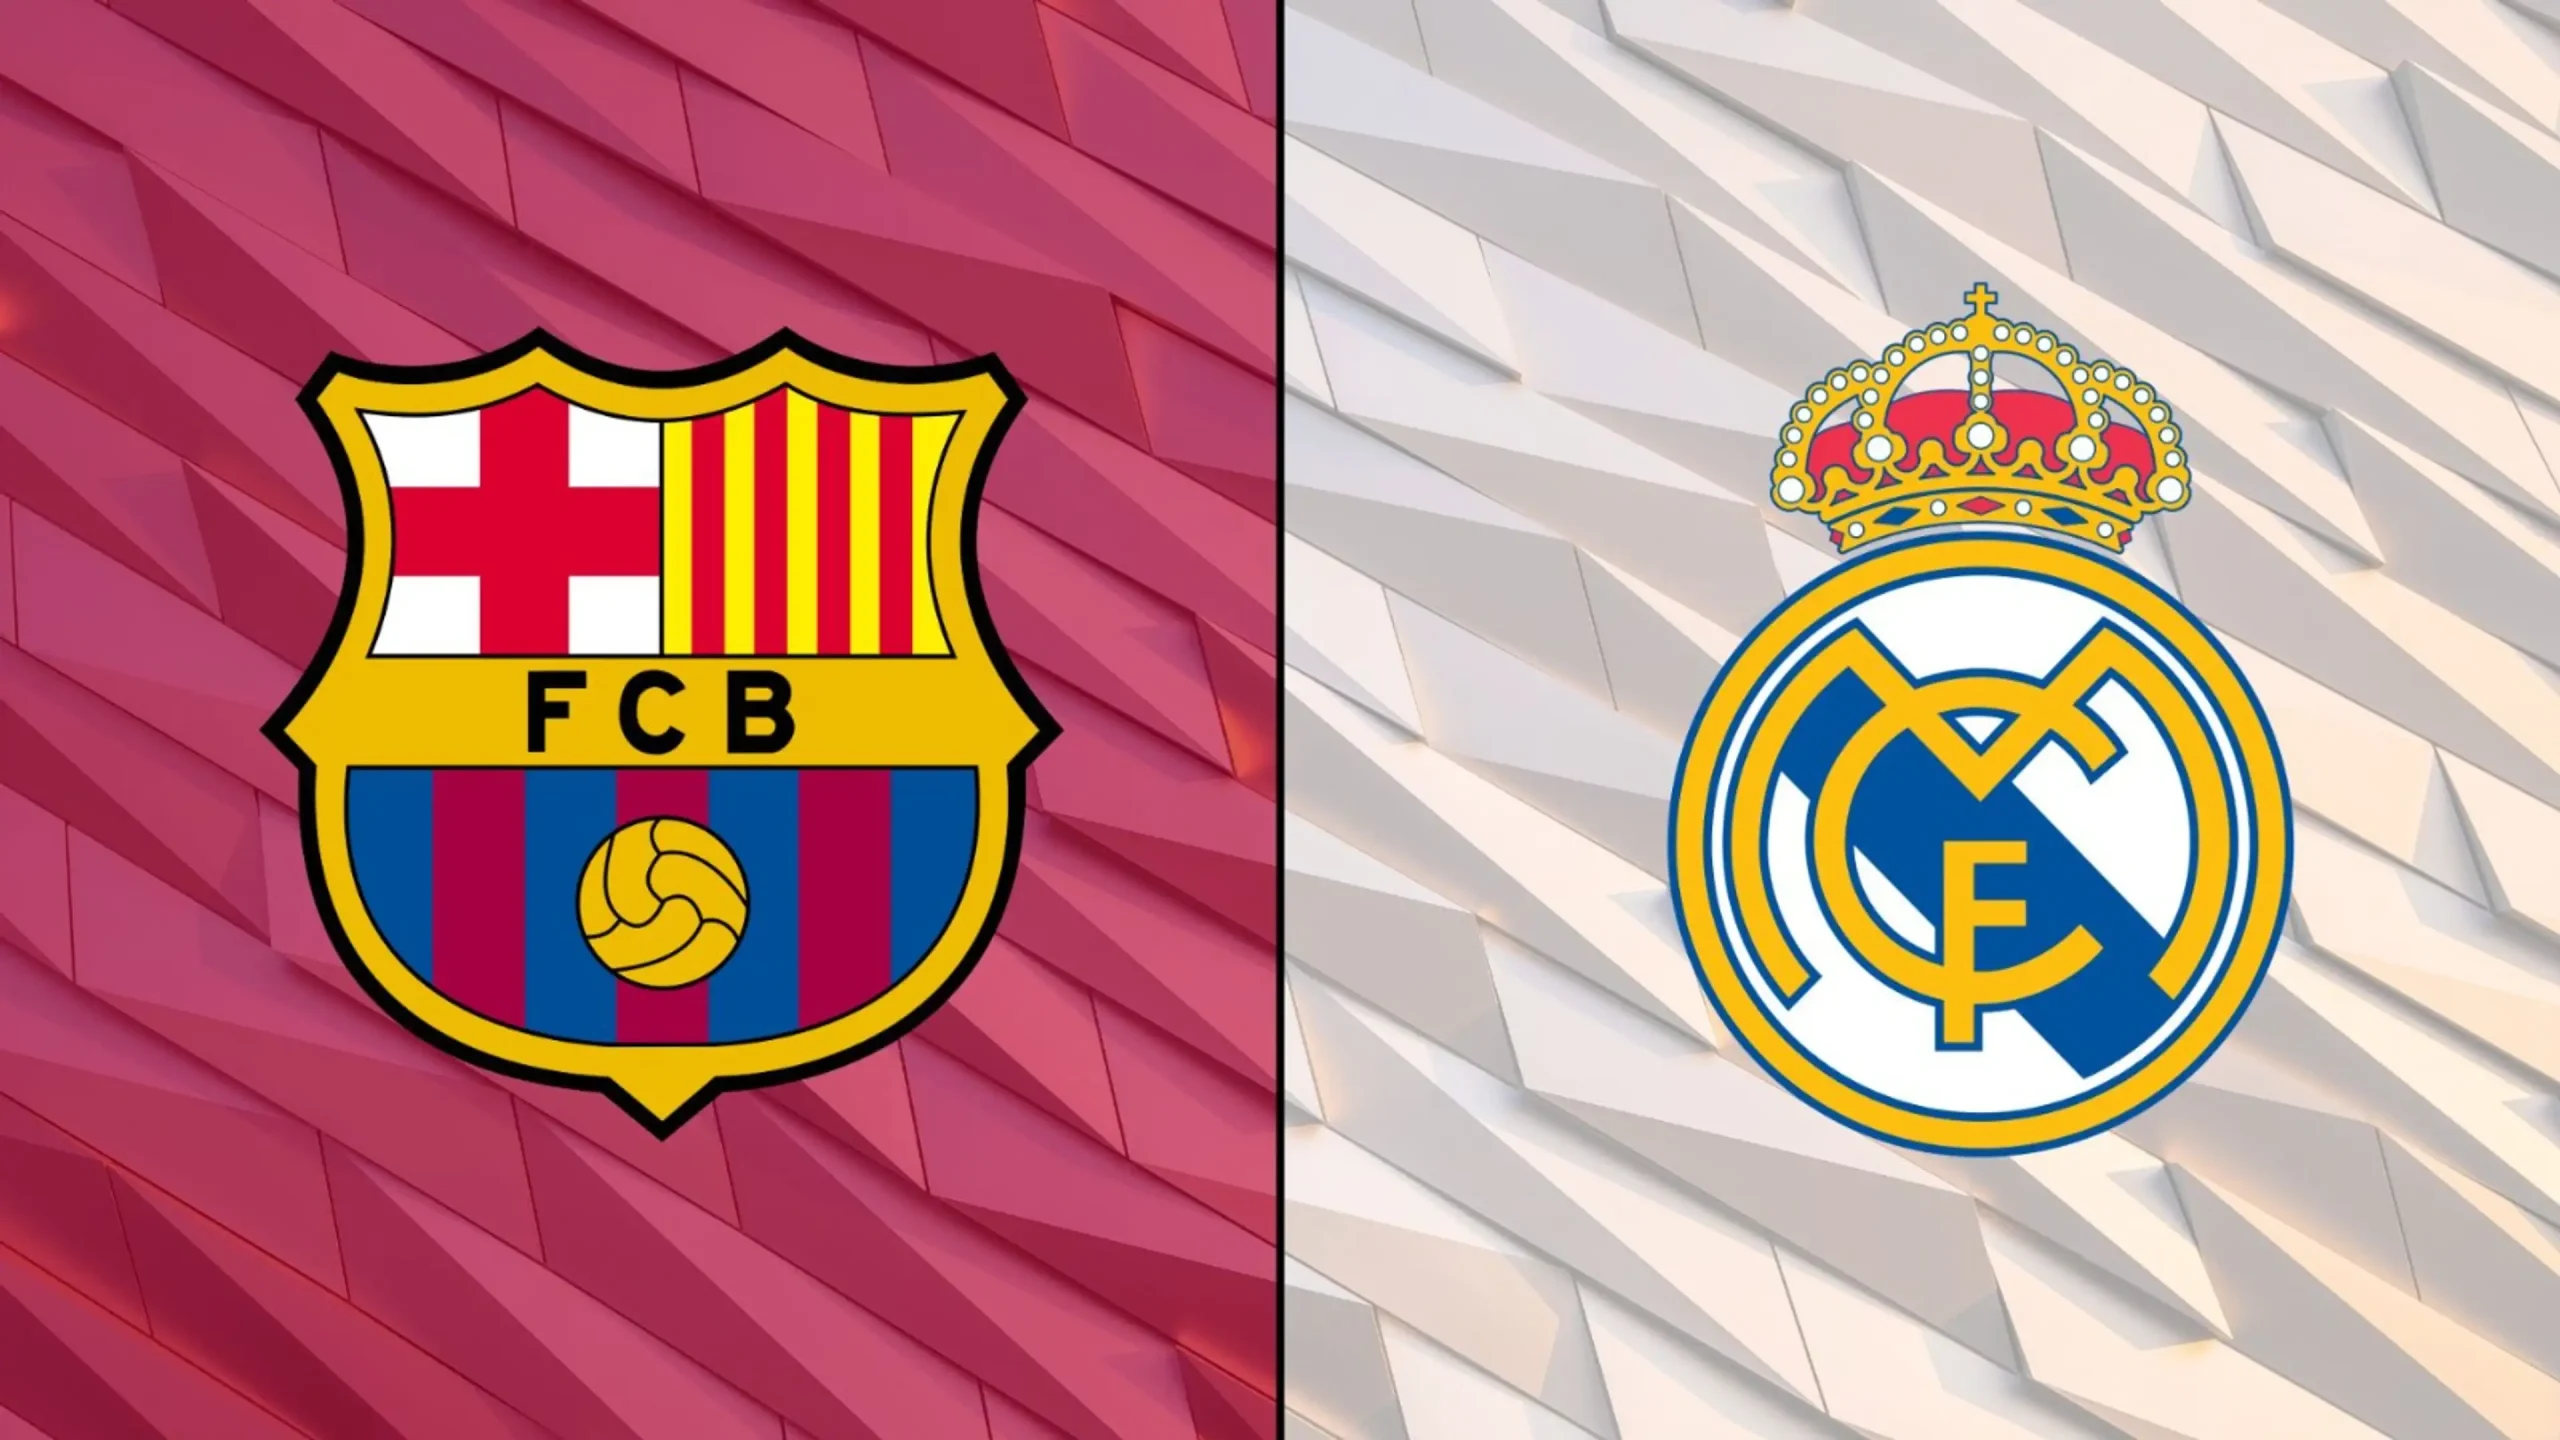 Real Madrid vs Barcelona, (21 April, 21:00)